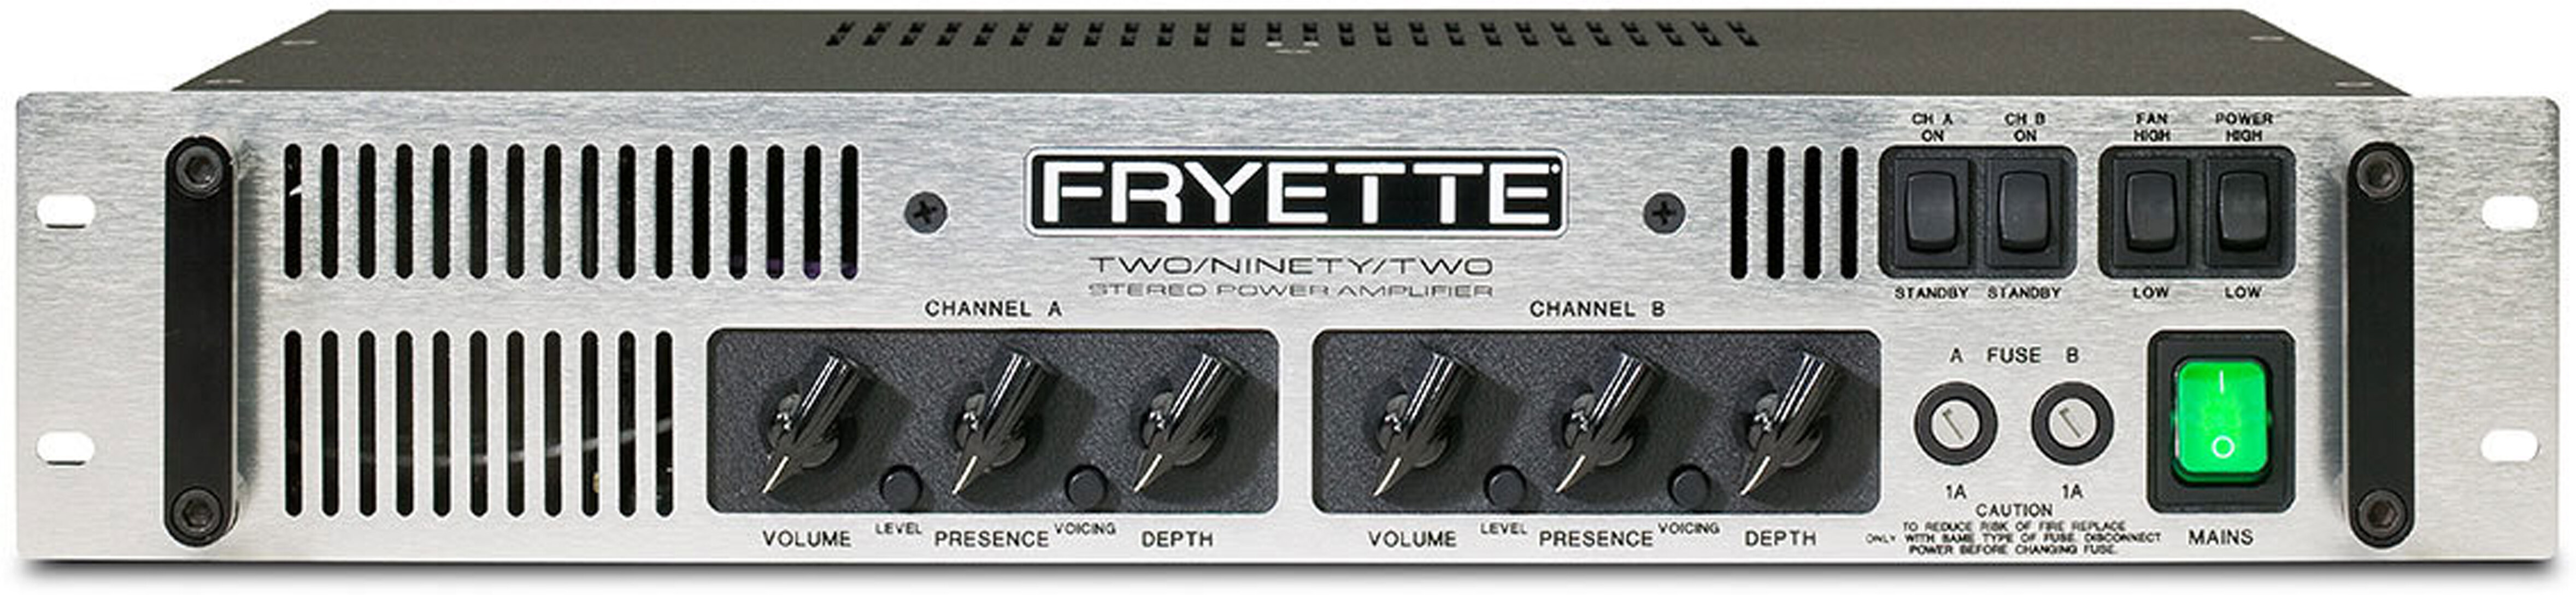 Fryette Two Ninety Two Power Amplifier 196 Watts -  G-2902-S